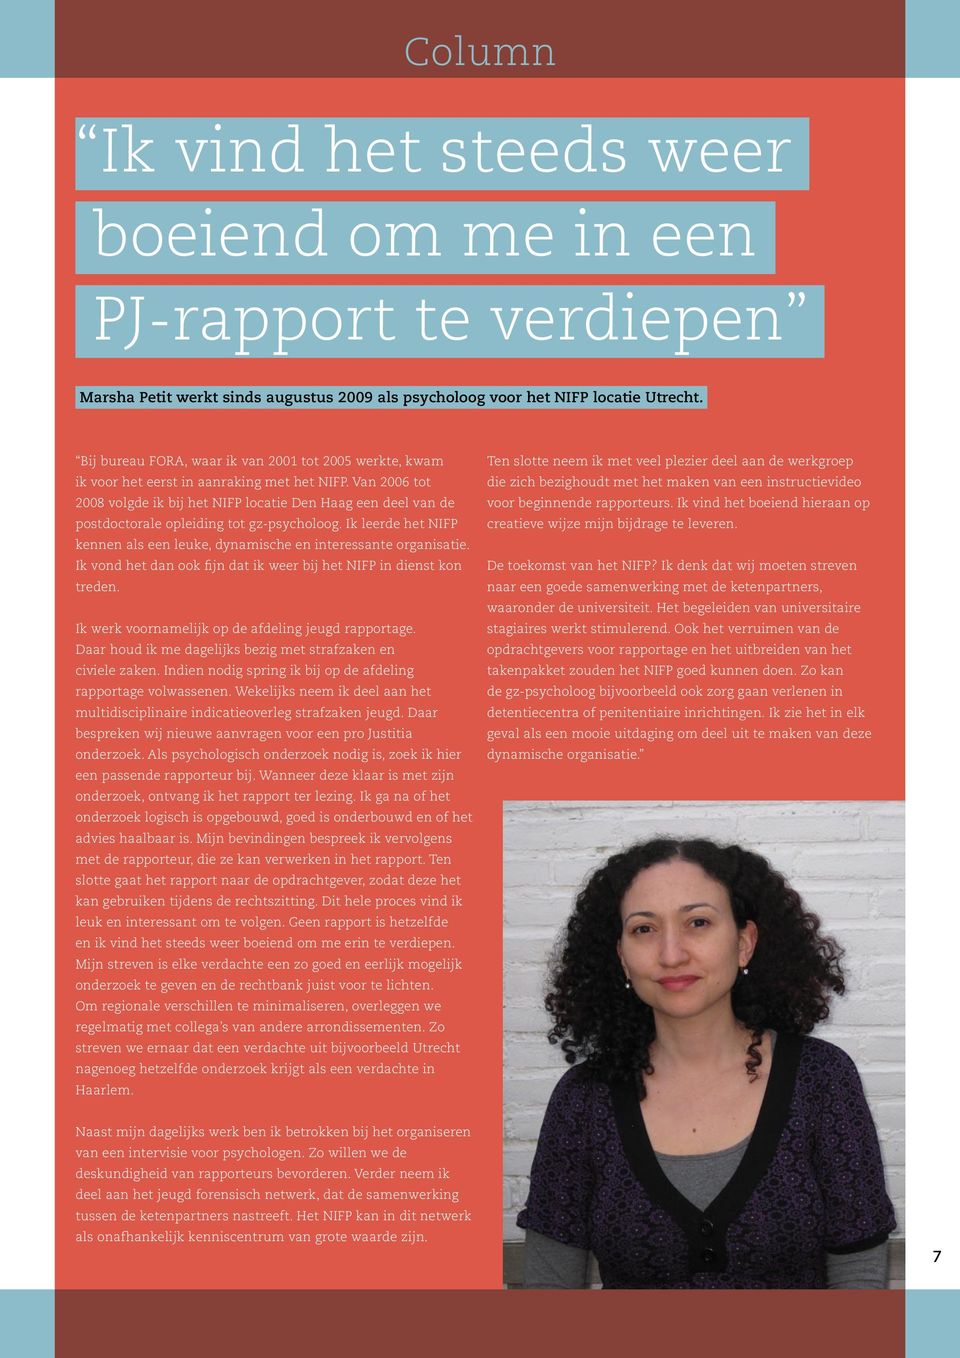 Van 2006 tot 2008 volgde ik bij het NIFP locatie Den Haag een deel van de postdoctorale opleiding tot gz-psycholoog. Ik leerde het NIFP kennen als een leuke, dynamische en interessante organisatie.